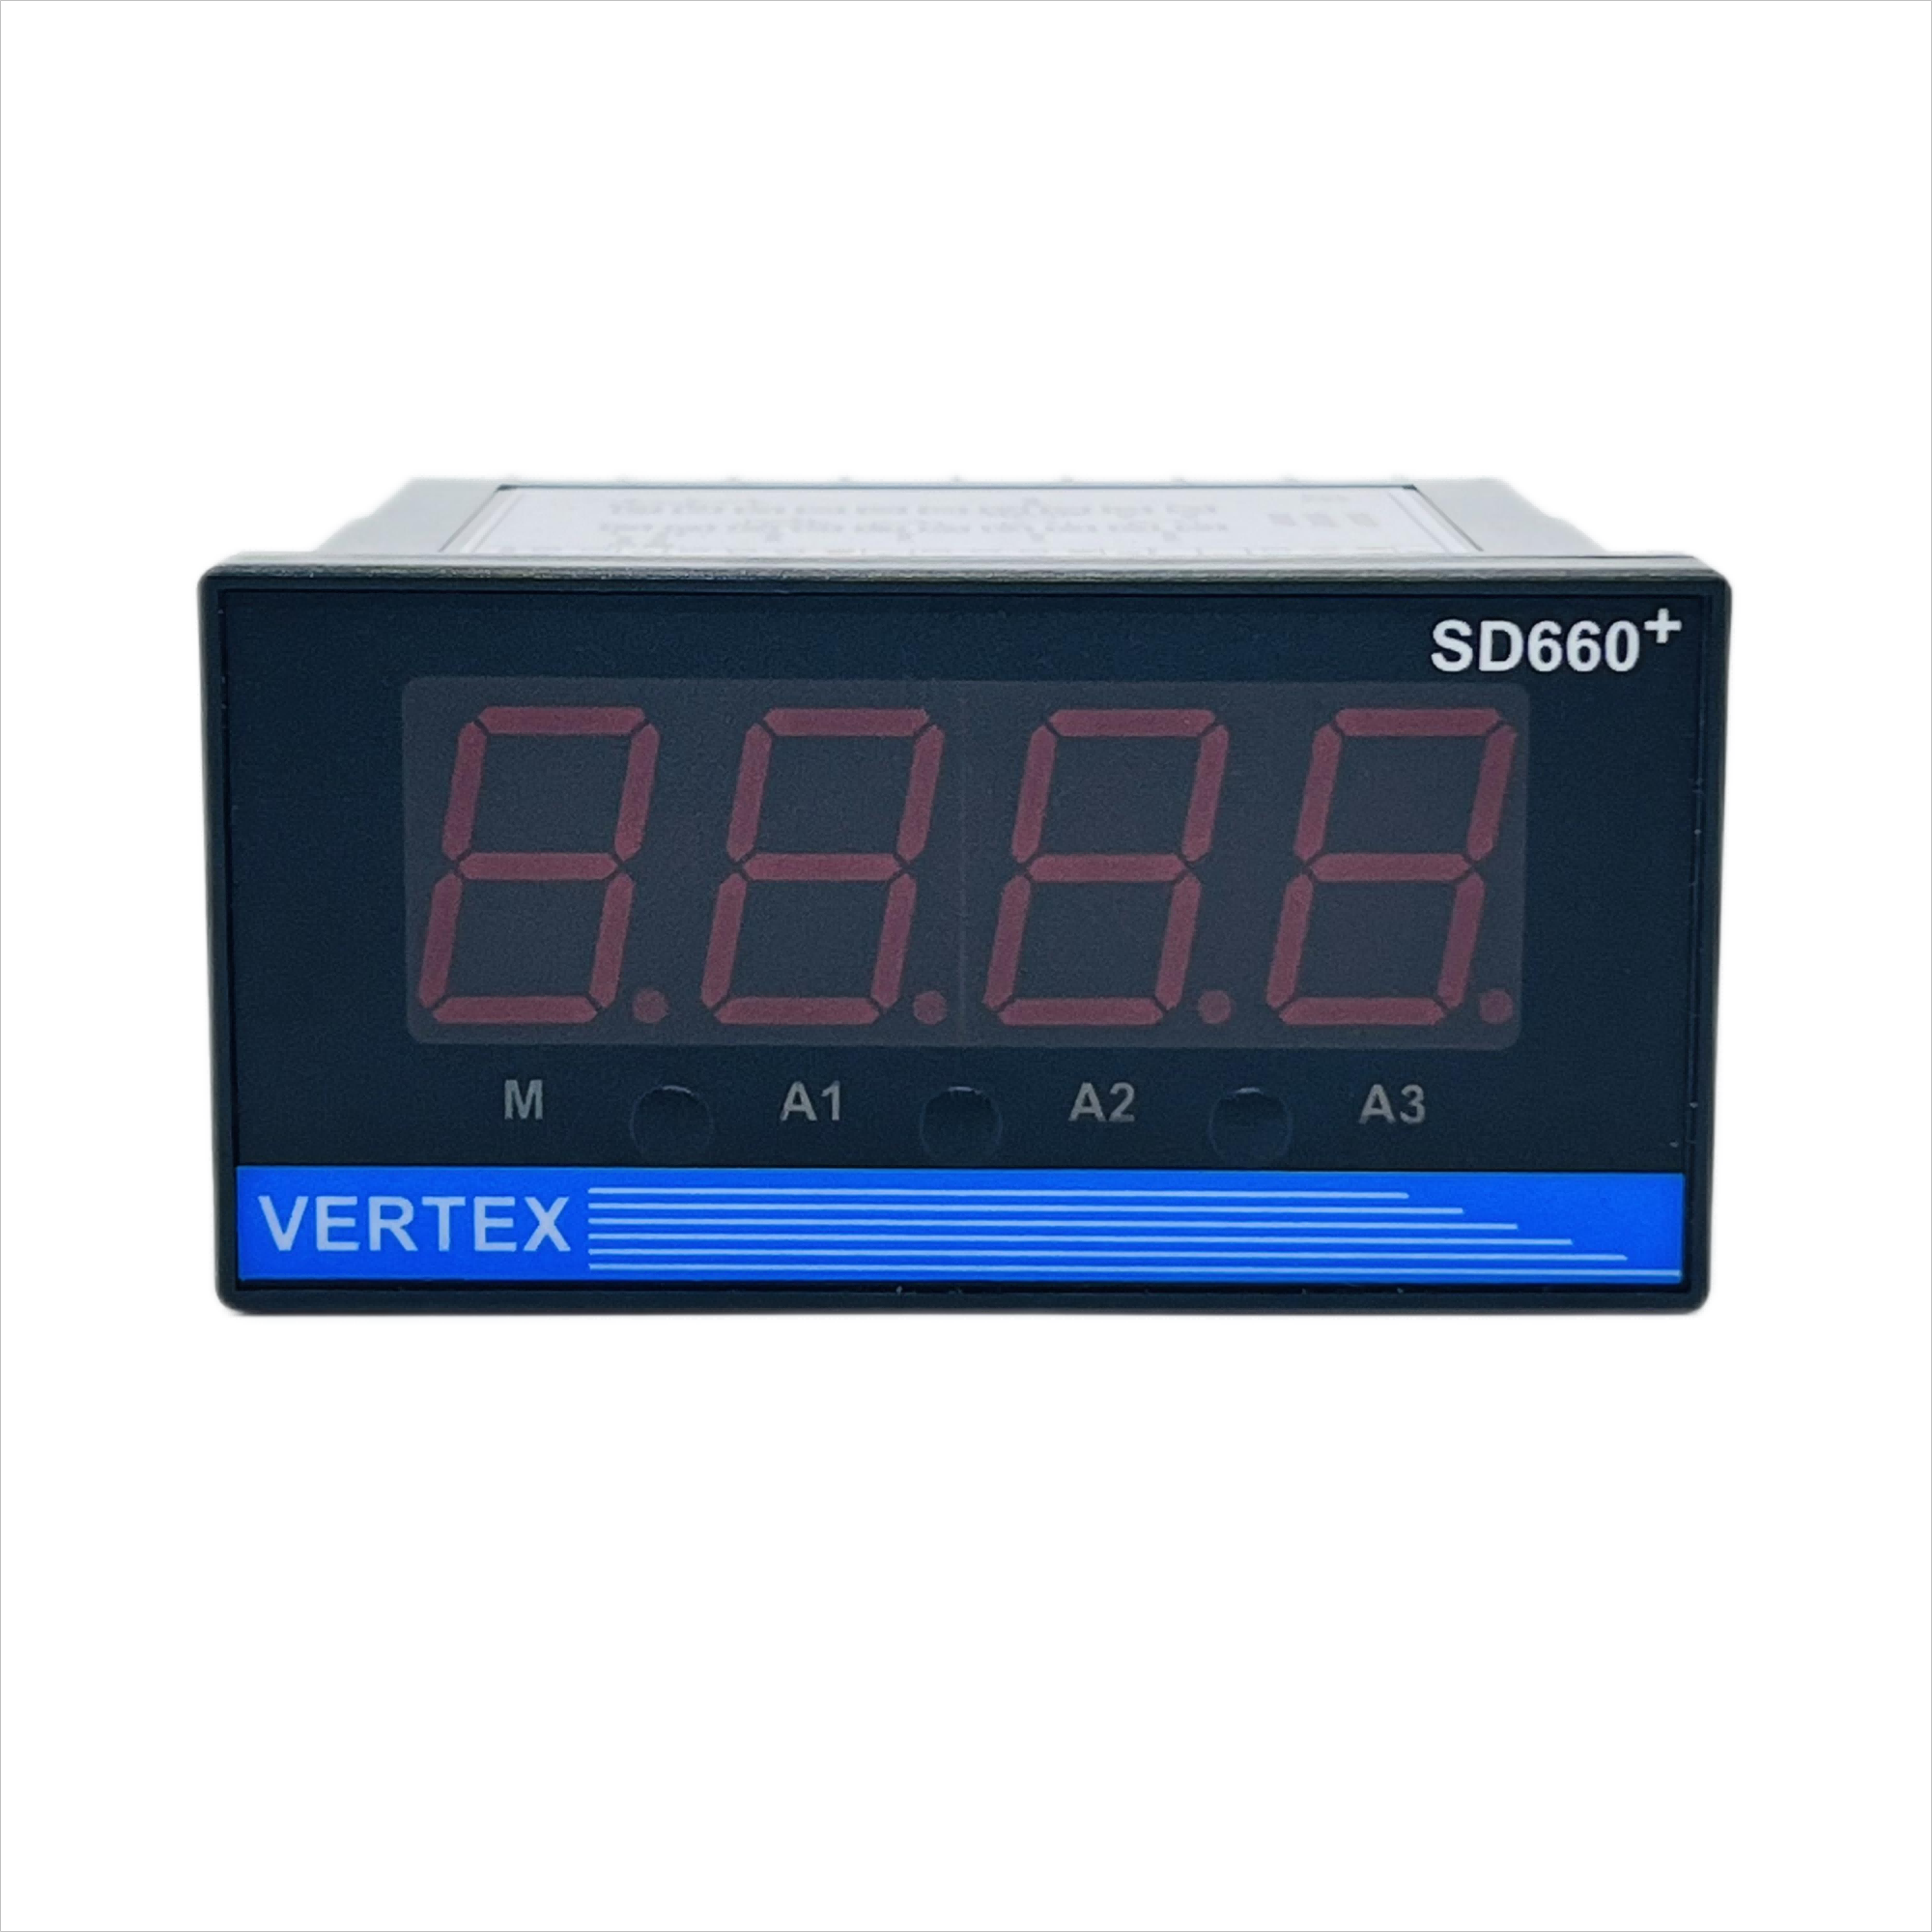 台湾巨诺VERTEX SD660+温控表 VD2603+ 数显PID温度控制器仪表 - 图3